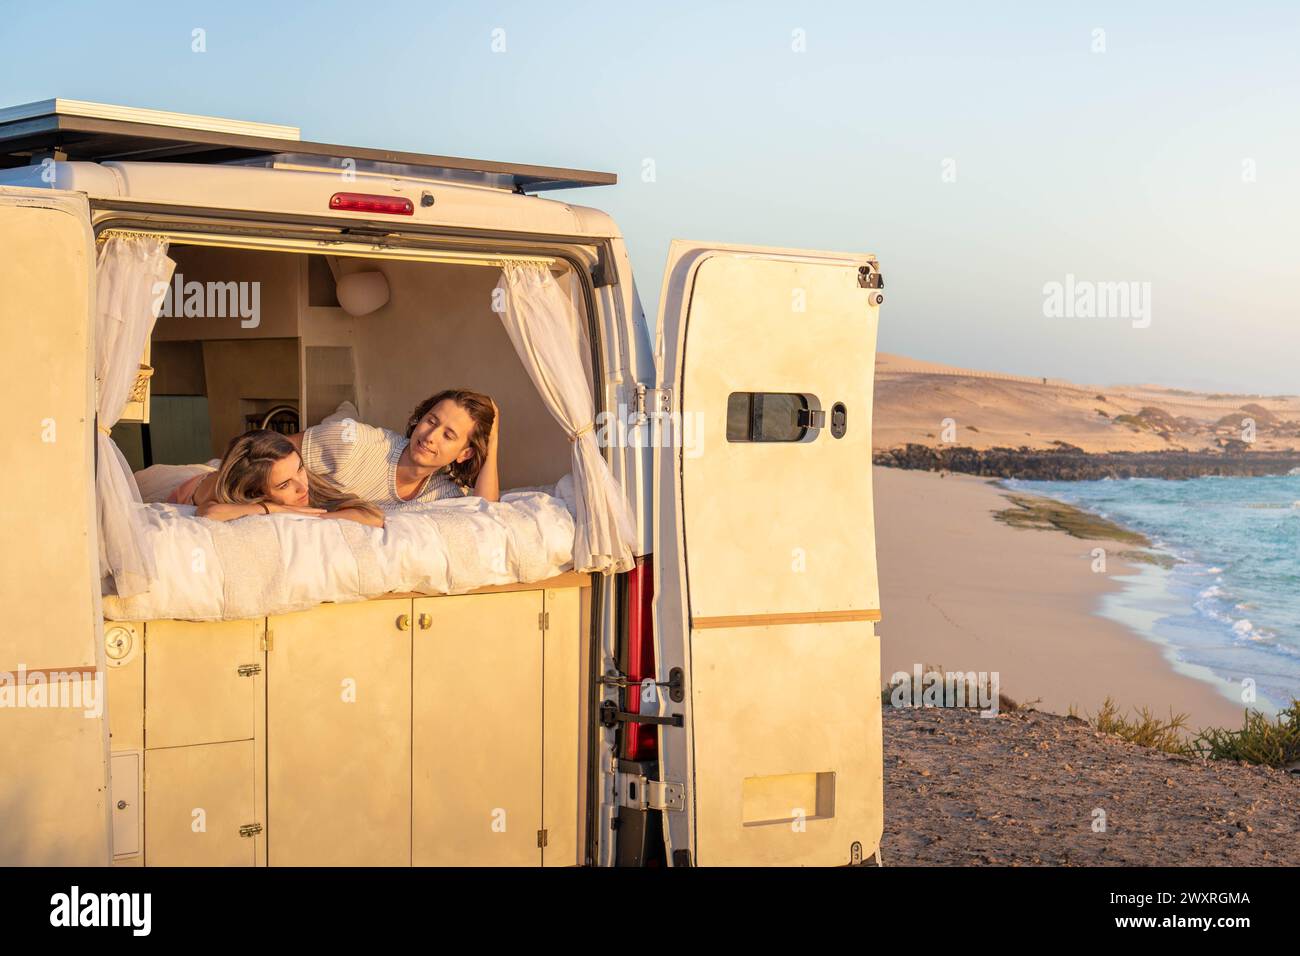 Ein paar Frauen werden entspannt auf dem Bett eines Wohnwagens gesehen, wie sie die aufgehende Sonne mit einem ruhigen Gesichtsausdruck betrachten. Stockfoto